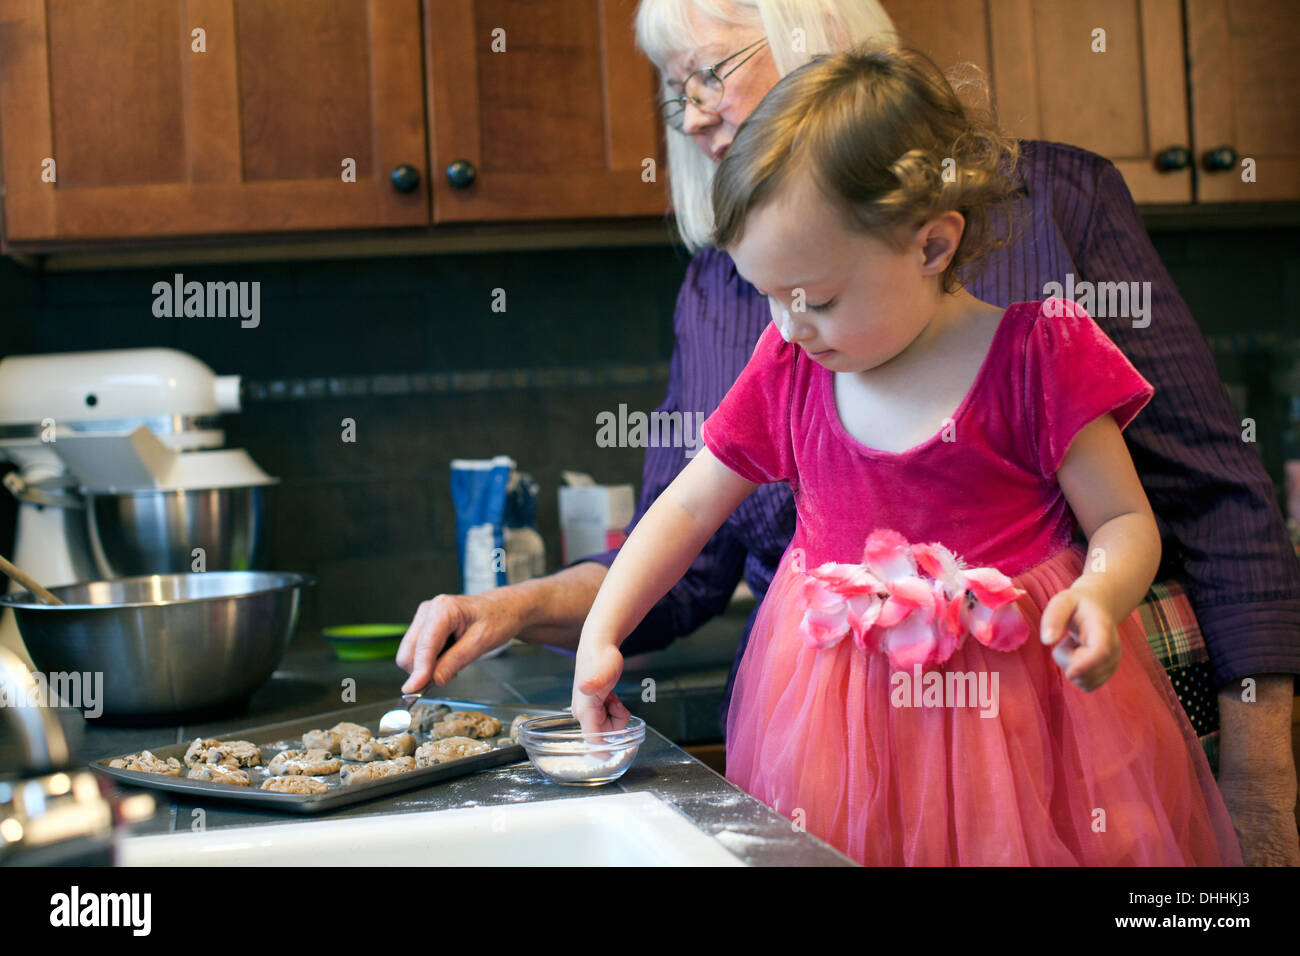 Grand-mère et petite-fille baking cookies Banque D'Images